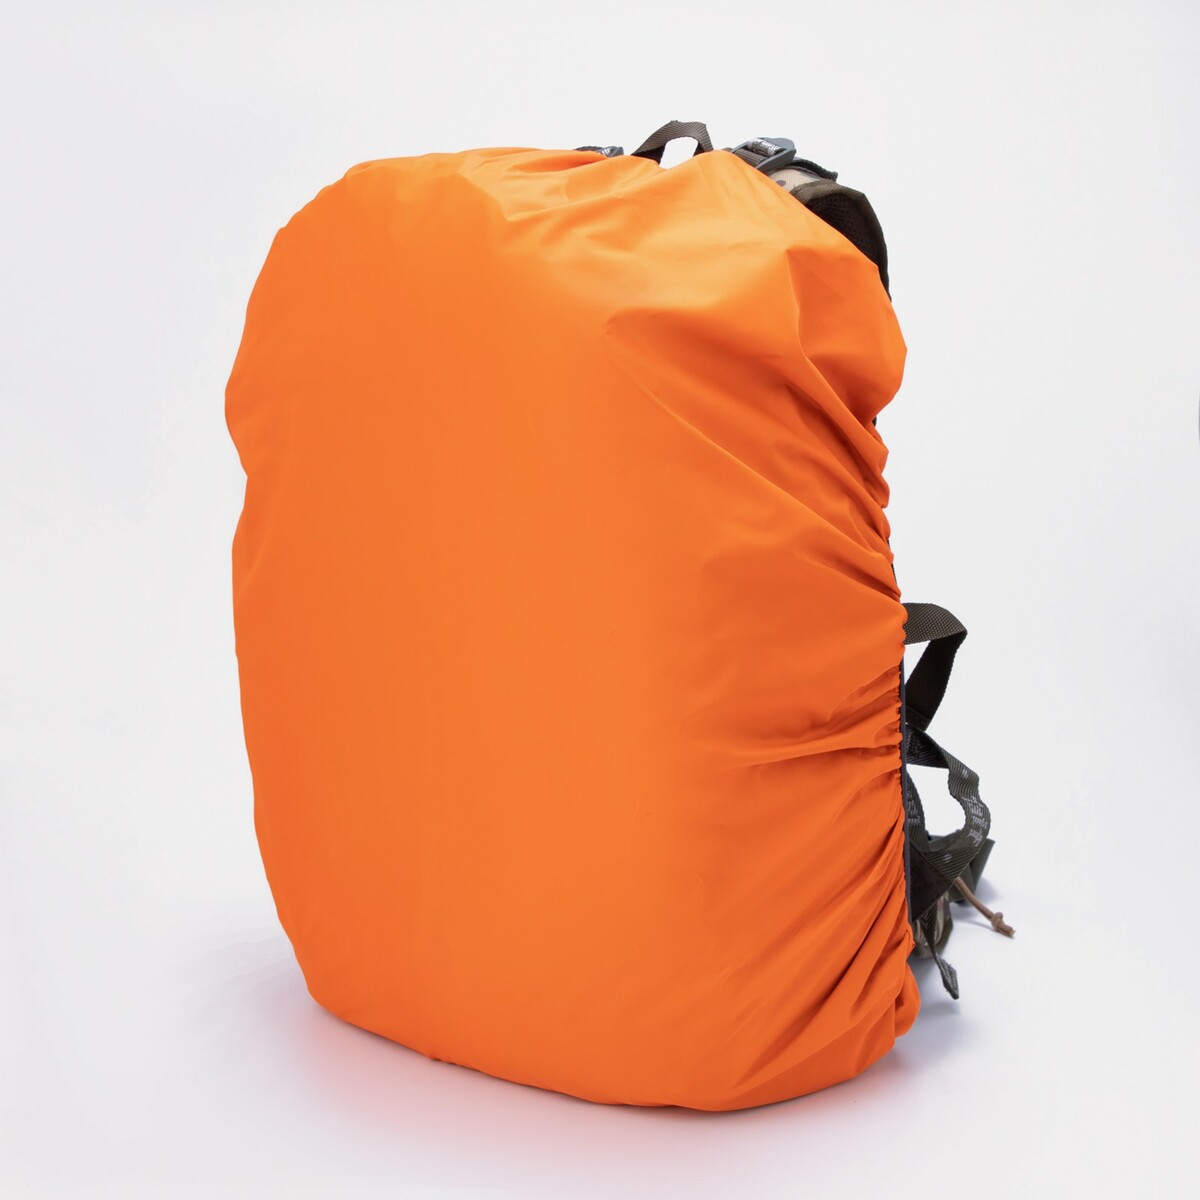 Чехол на рюкзак 45 л, цвет оранжевый чехол влагостойкий на рюкзак 10 30 литров оксфорд 210